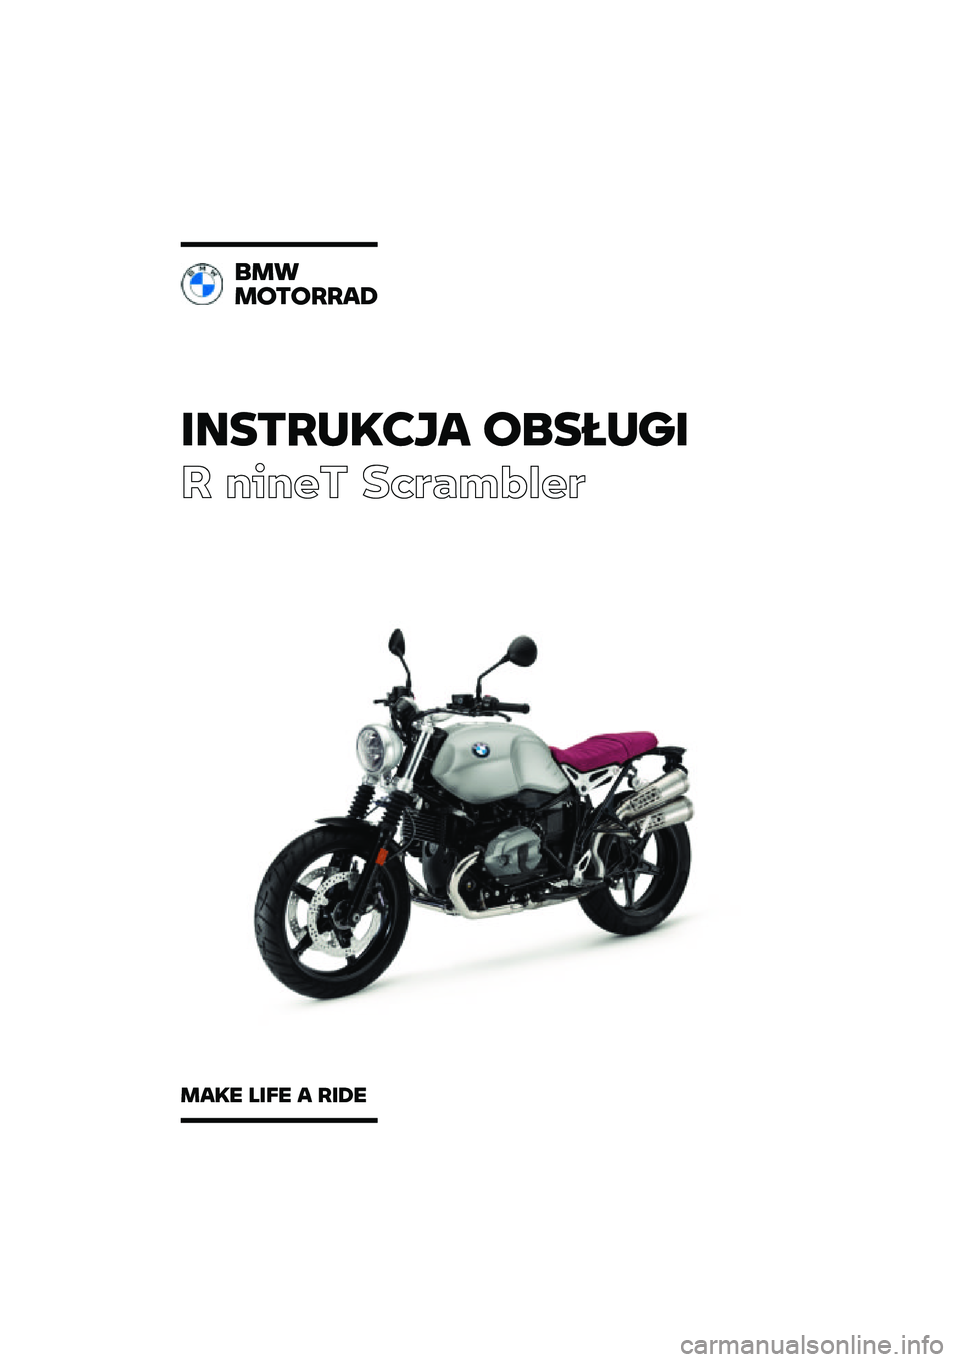 BMW MOTORRAD R NINE T SCRAMBLER 2021  Instrukcja obsługi (in Polish) �������\b�	�
� �\f�
�����
� ����� ��\b�	�
��\f�
��	
�
��
��\f��\f����
���\b� ���� � ���� 